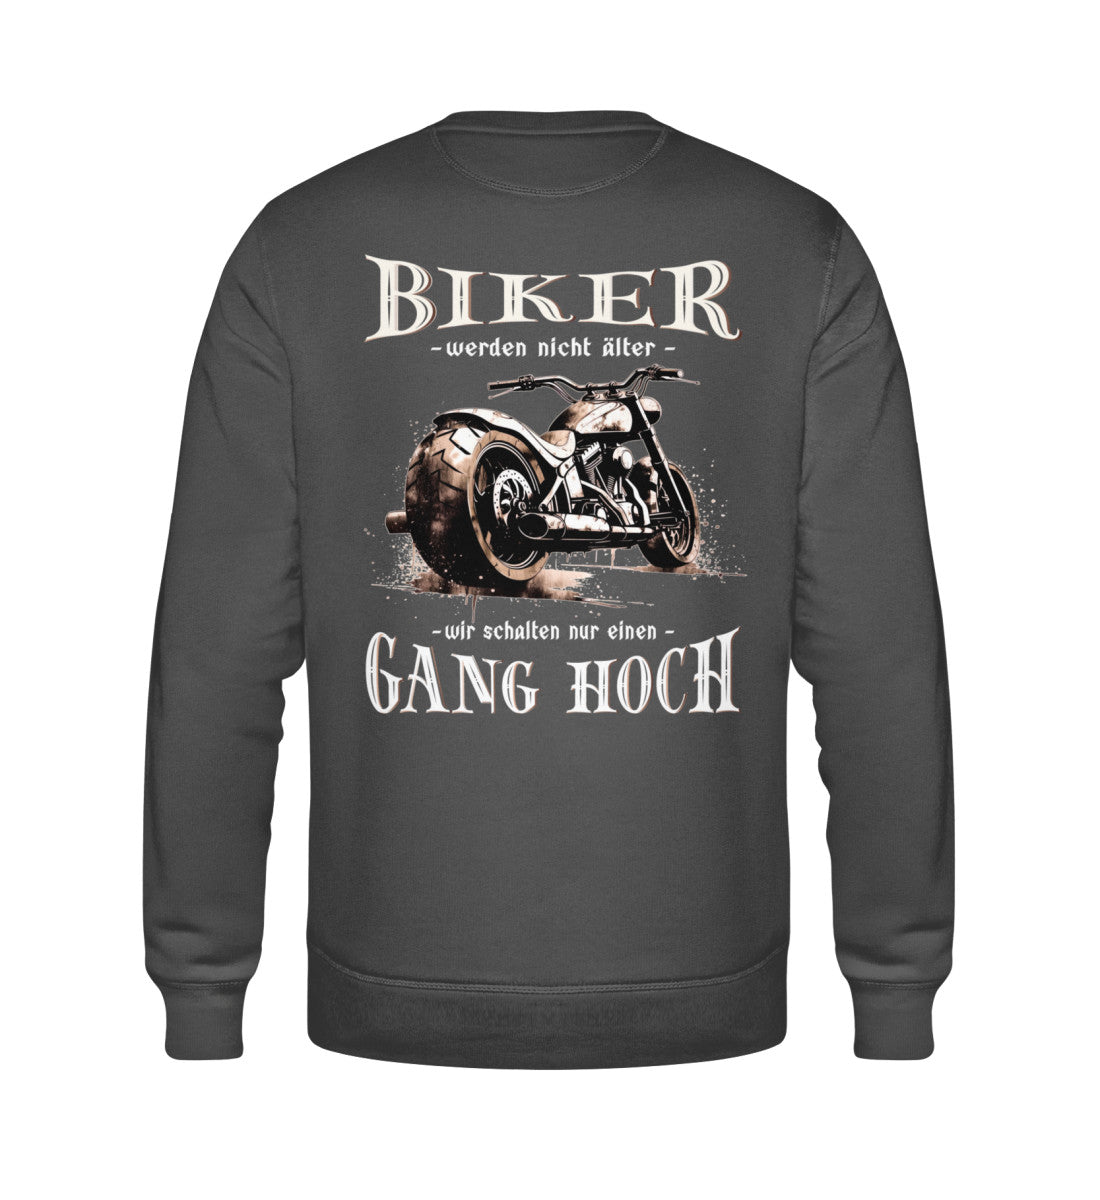 Ein Biker Sweatshirt für Motorradfahrer von Wingbikers mit dem Aufdruck, Biker werden nicht älter - Wir schalten nur einen Gang hoch! mit Back Print, in dunkelgrau.